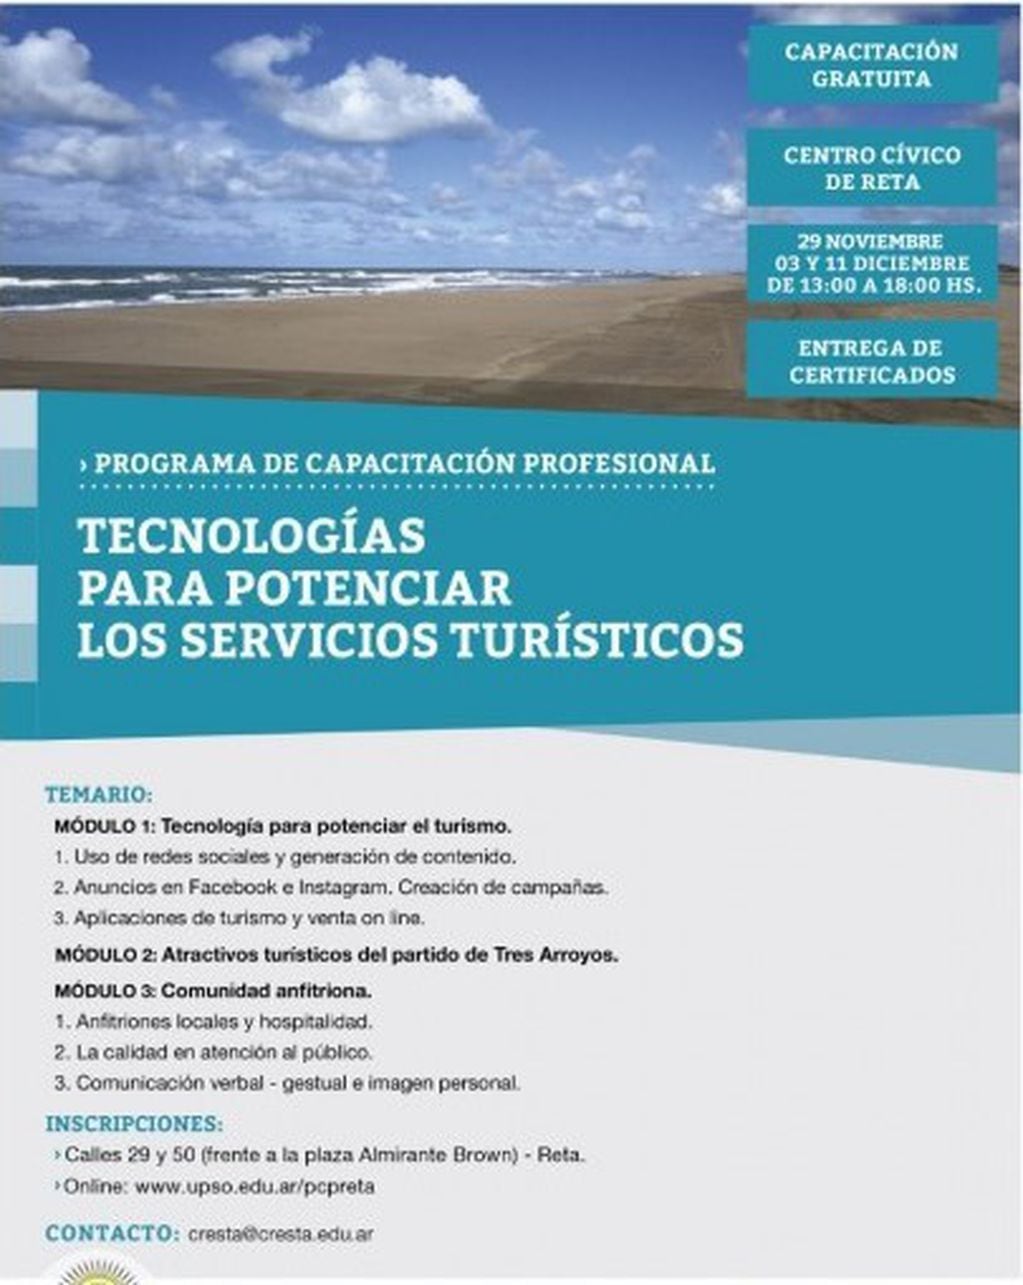 "TECNOLOGÍAS PARA POTENCIAR LOS SERVICIOS TURÍSTICOS" (prensa)